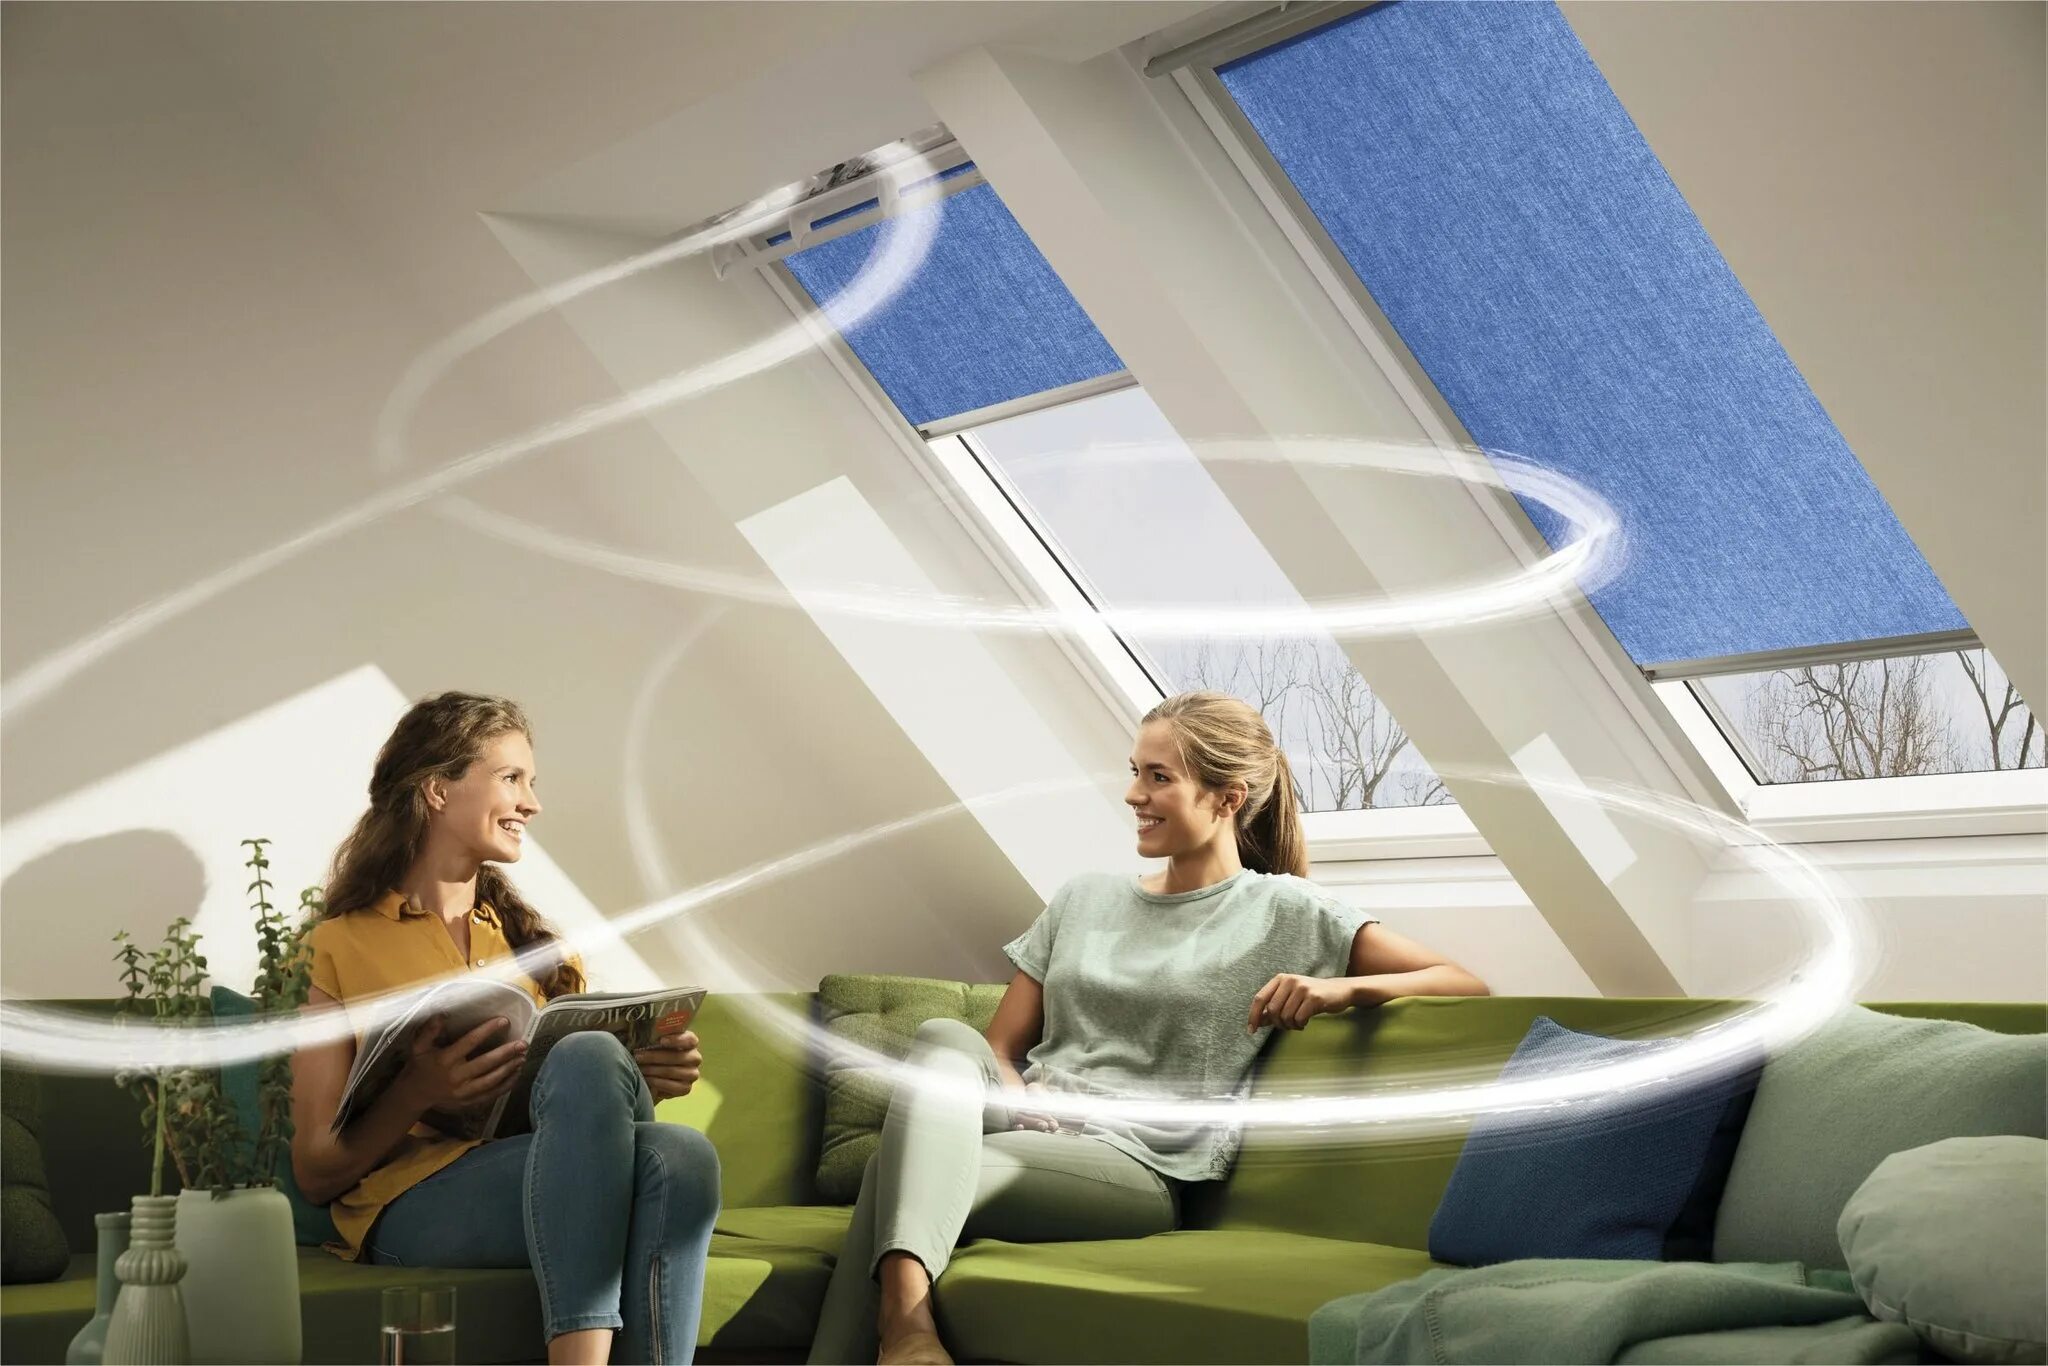 Обработка воздуха в помещении. Микроклимат в комнате. Свежий воздух в доме. Воздух в квартире. Свежесть воздуха.